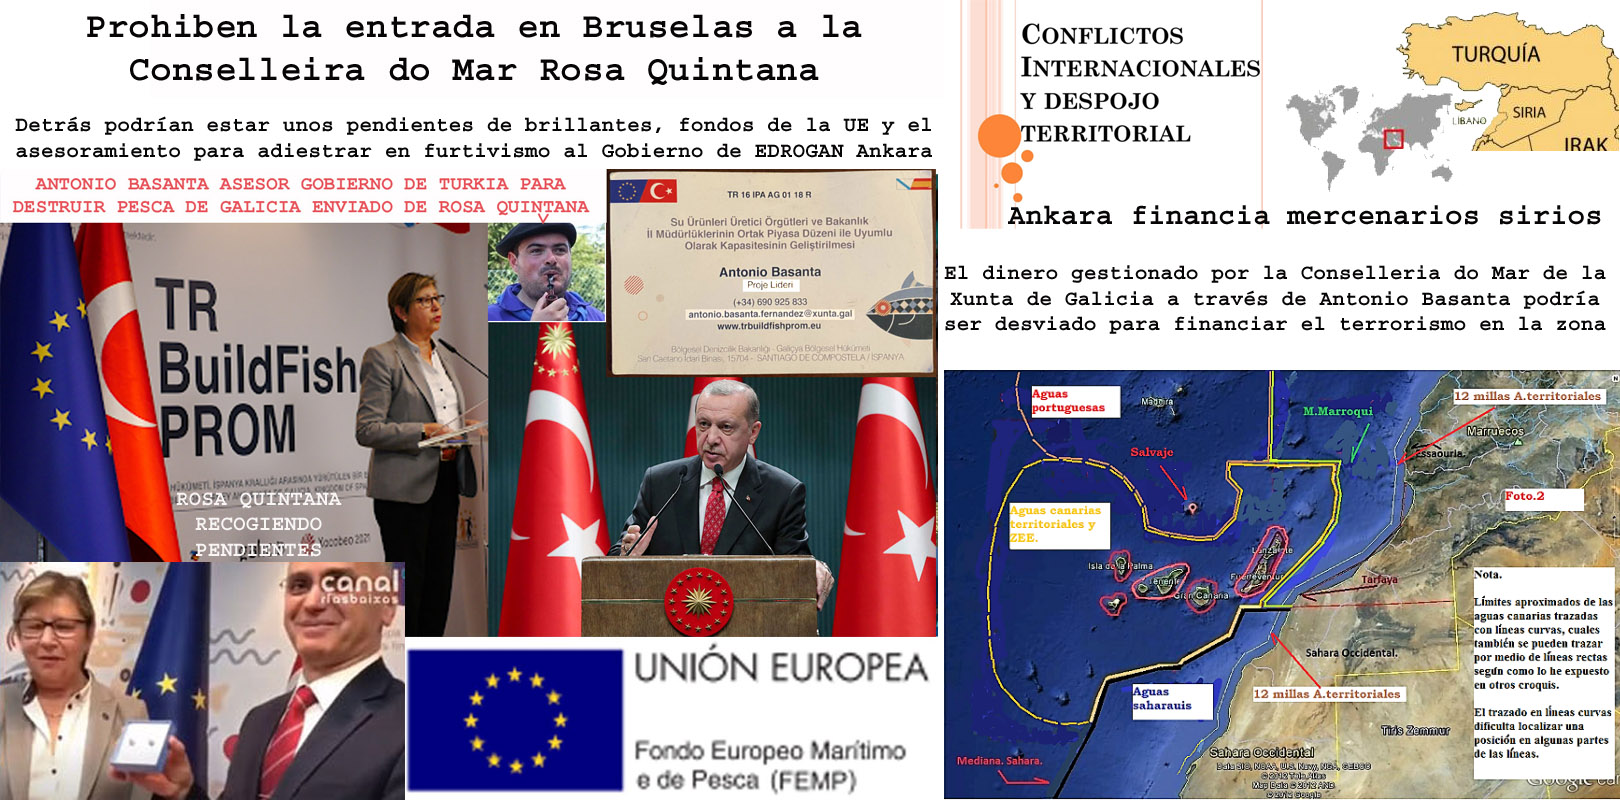 El hermanamiento de pesca gestionado por Rosa Quintana y Antonio Basanta  cargo político del PPdeG con Turquía destapa un grave conflicto  Internacional dentro de la Unión Europea. - Xornal Galicia